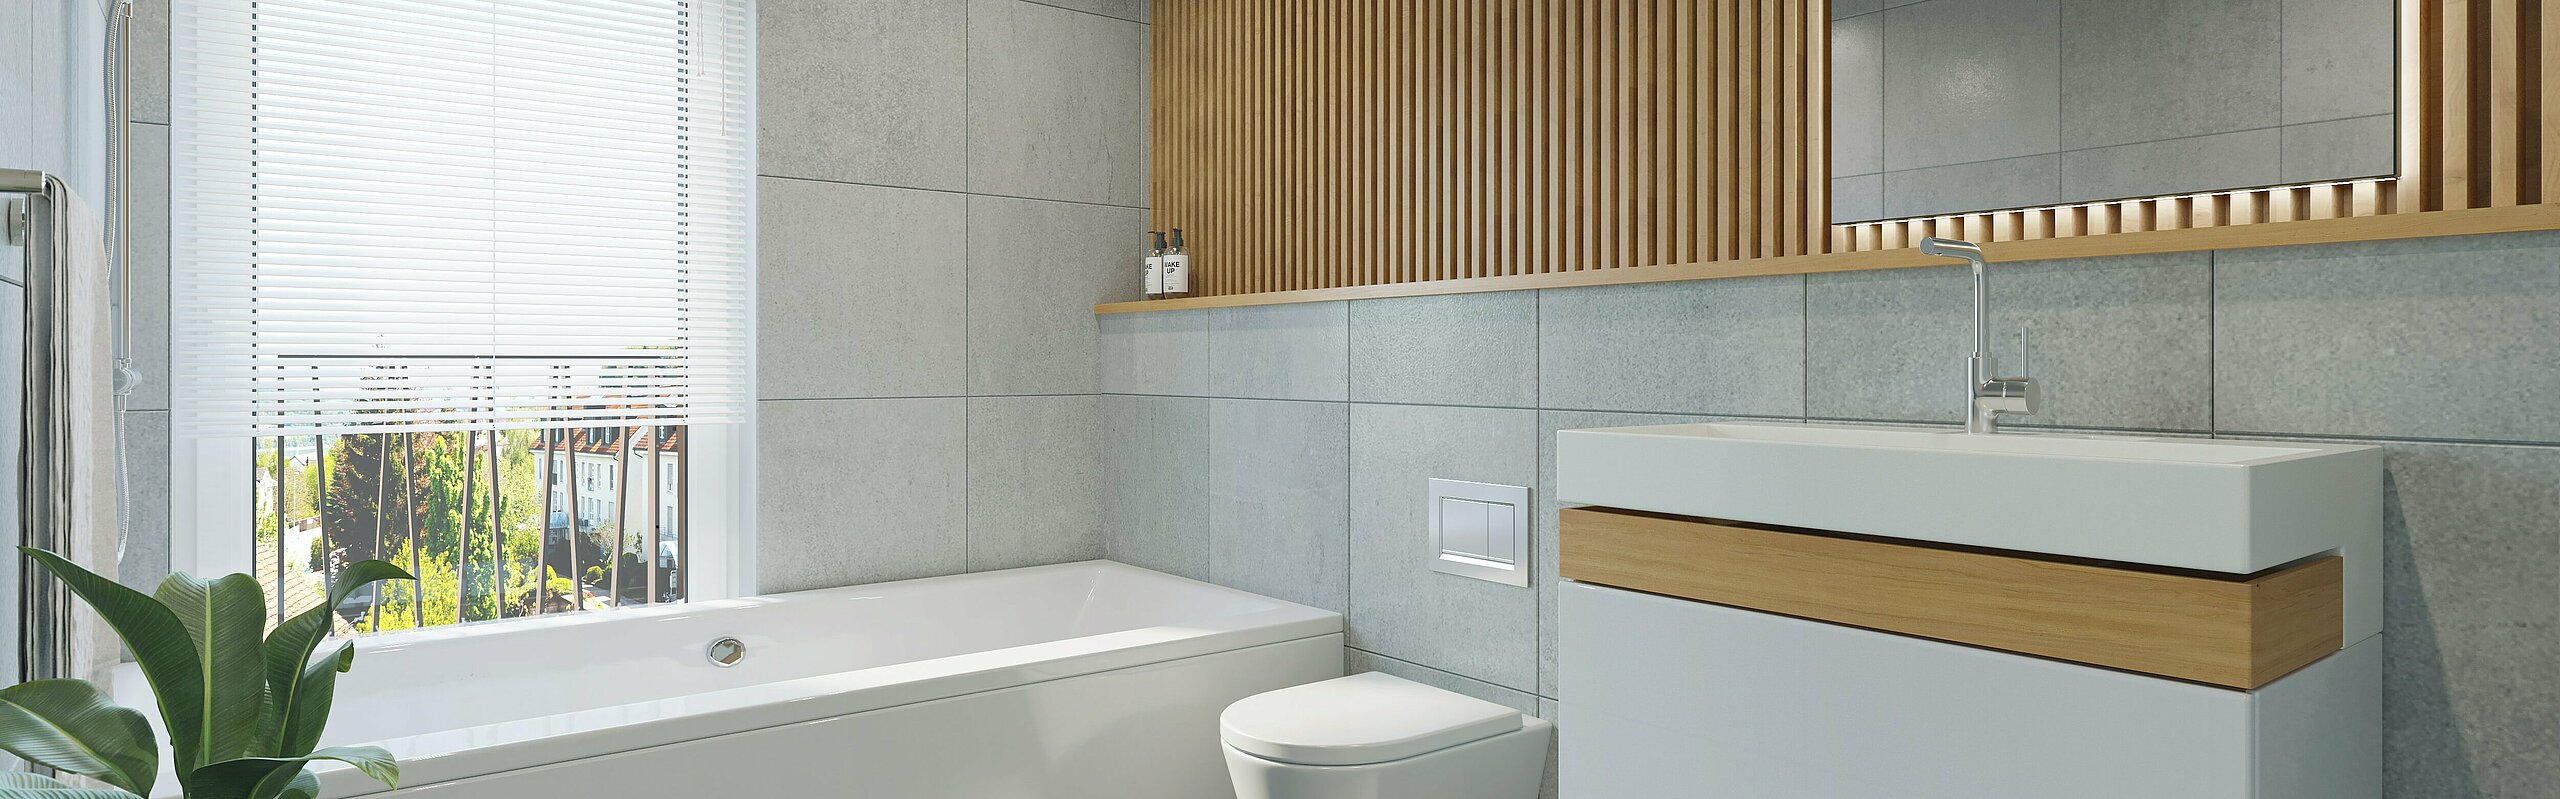 Badezimmer mit grauen Fliesen und Details in Holz. 